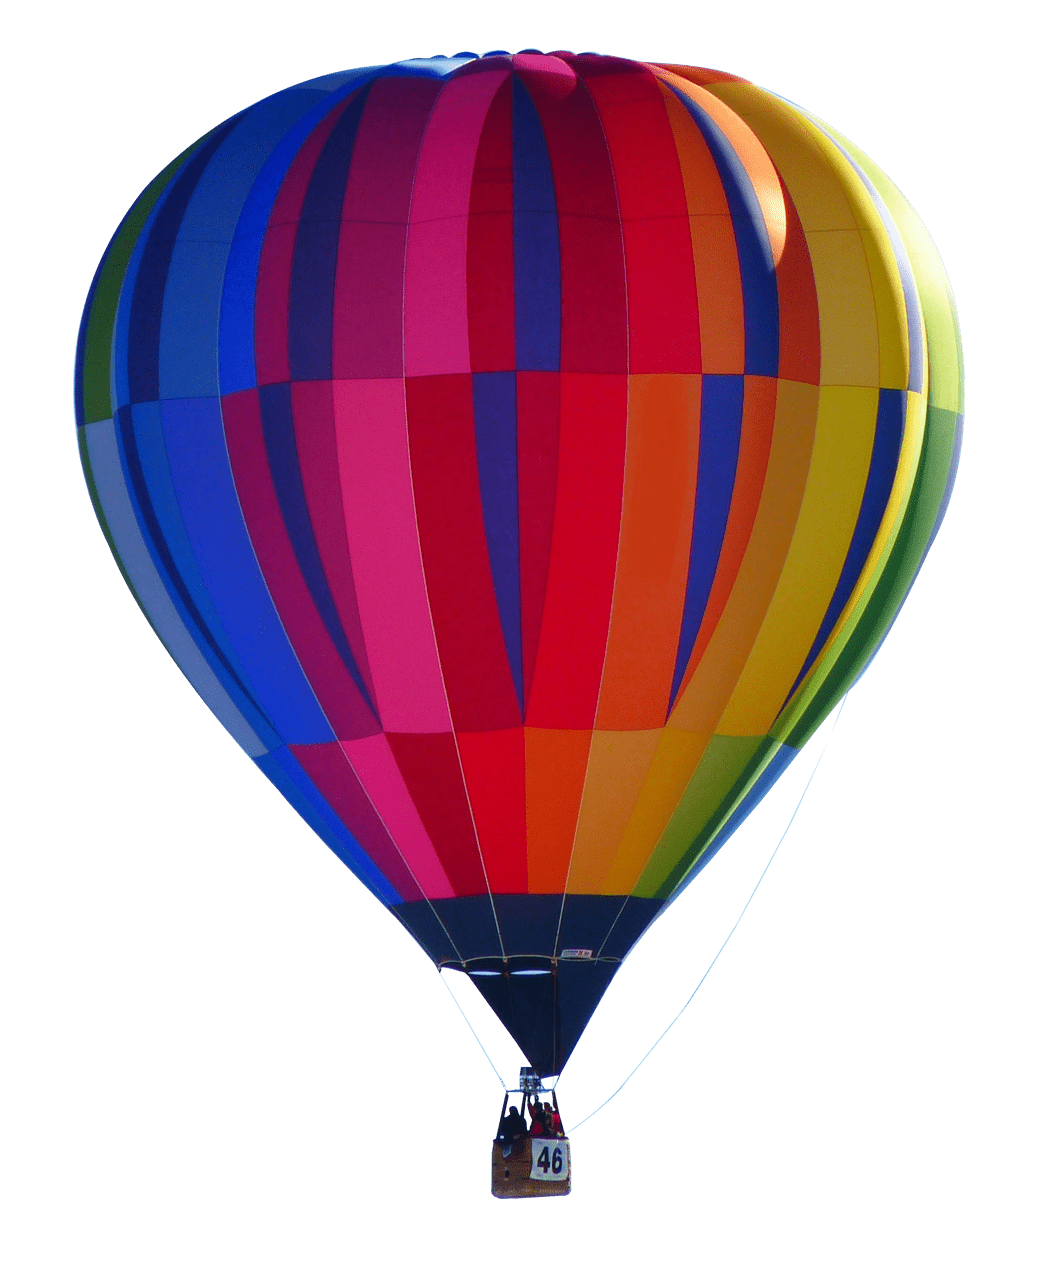 Gas clipart hot air balloon, Gas hot air balloon Transparent FREE for